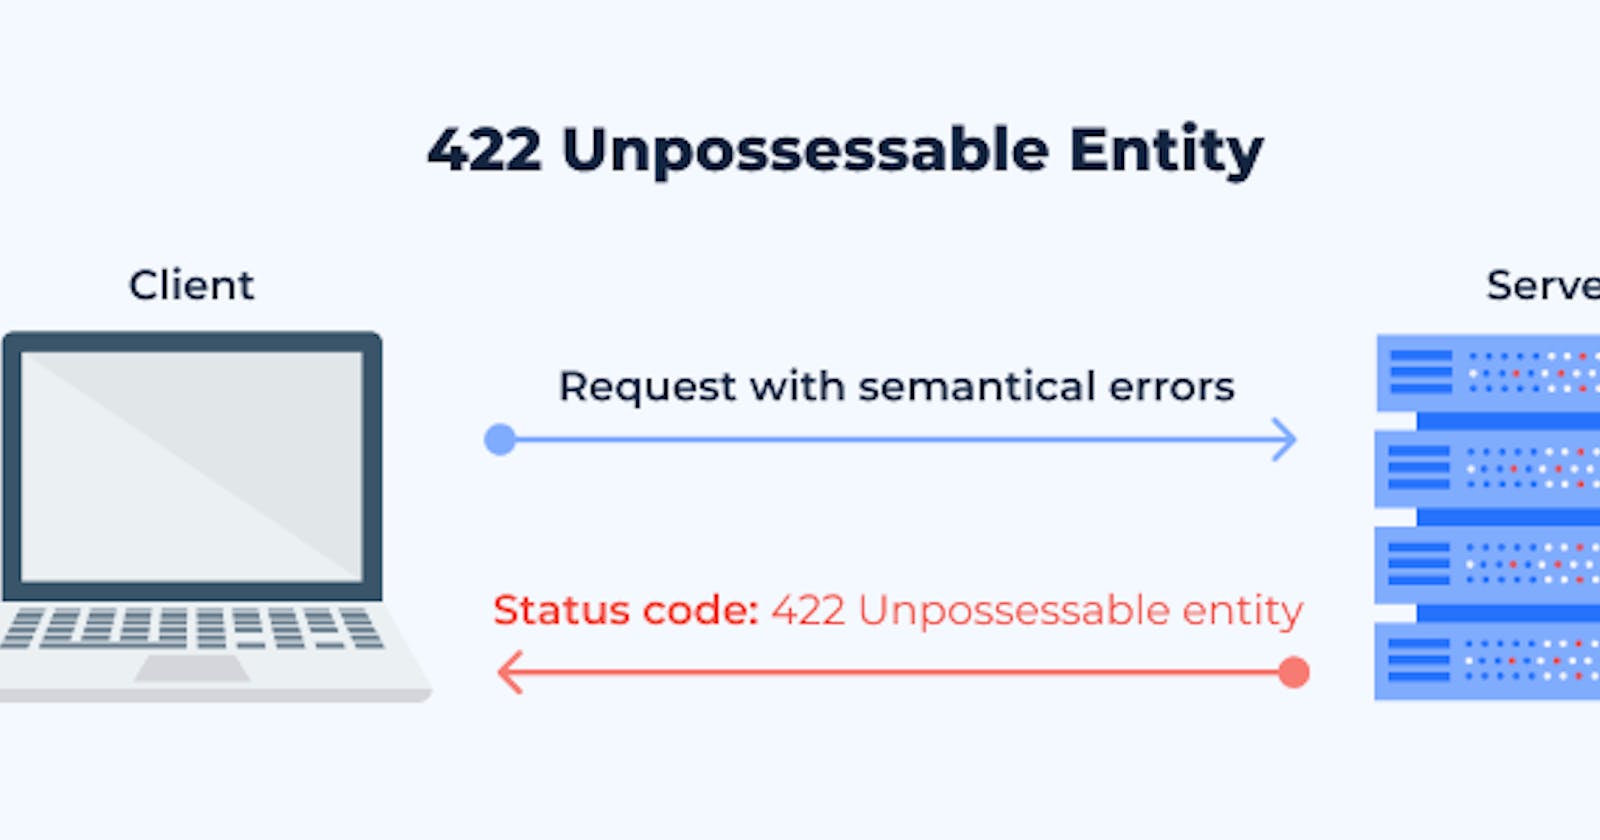 What is a 422 - Unprocessable Entity/Content?